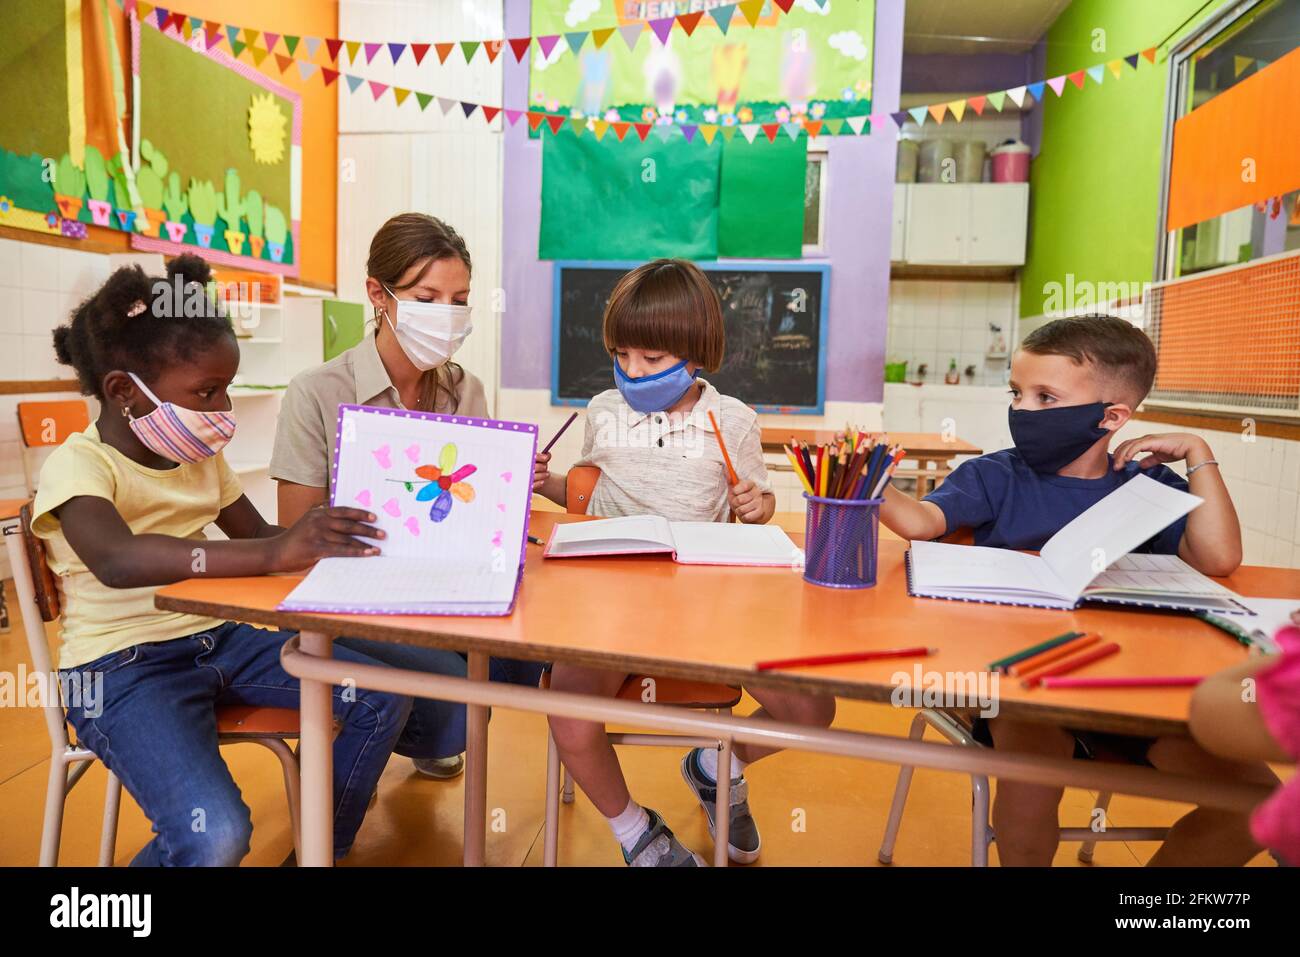 Multikulturelle Gruppe von Kindern malt mit Buntstiften am Tisch In der Kindertagesstätte mit einem Pädagogen Stockfoto